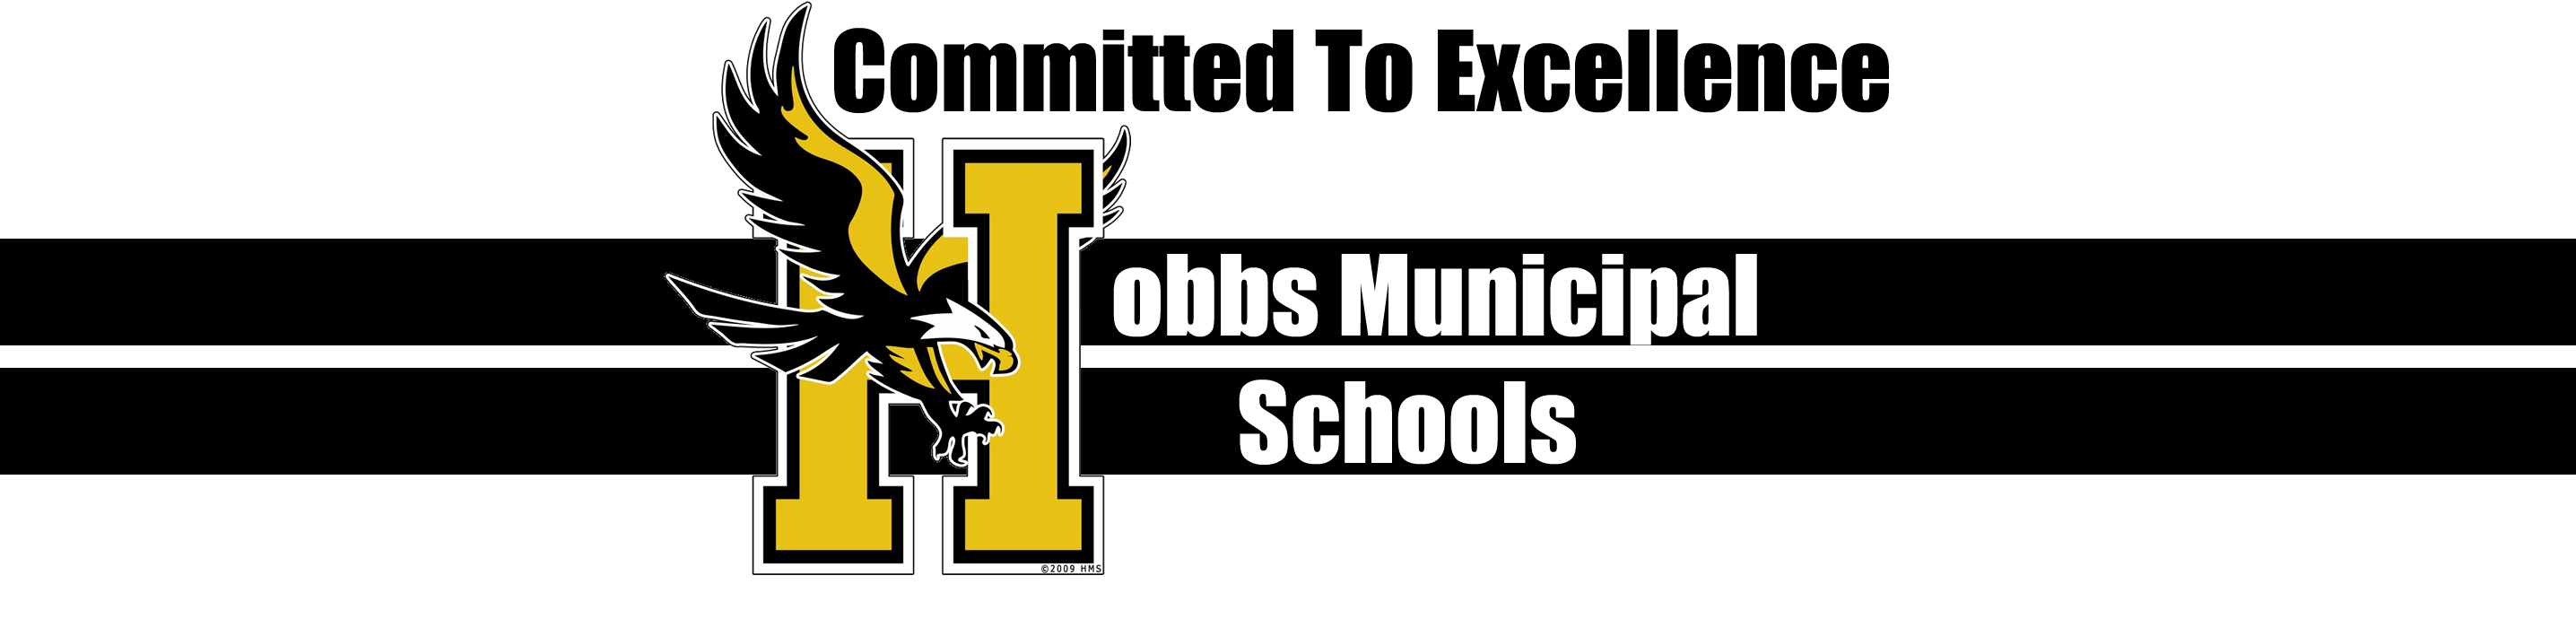 We Are Hobbs Schools Hobbs Municipal Schools